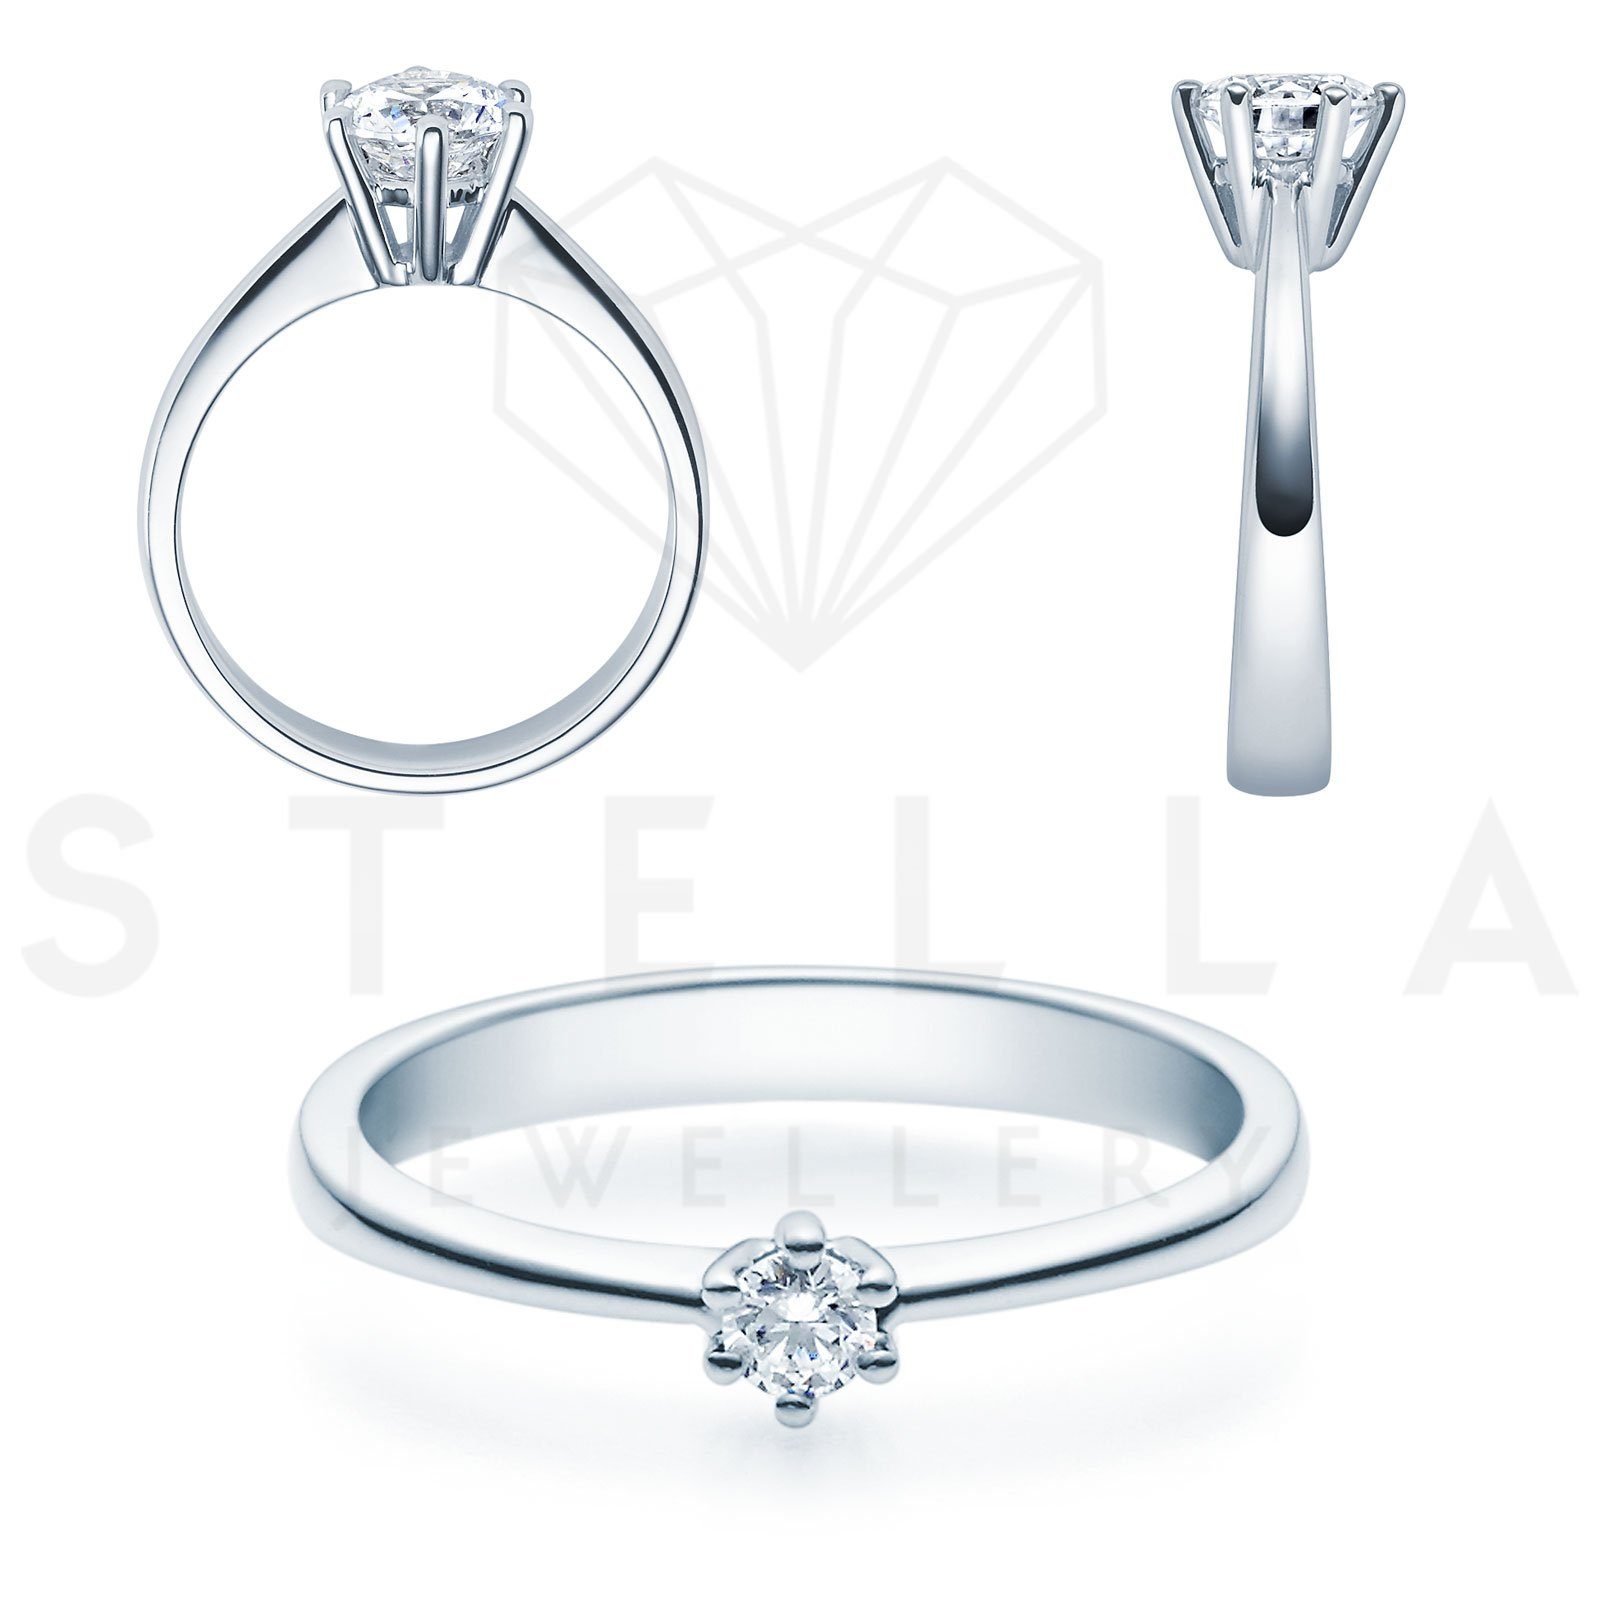 Stella-Jewellery Verlobungsring Verlobungsring 585er Weißgold Diamant Gr. 54 (inkl. Etui), mit Brillant 0,10ct. - Poliert